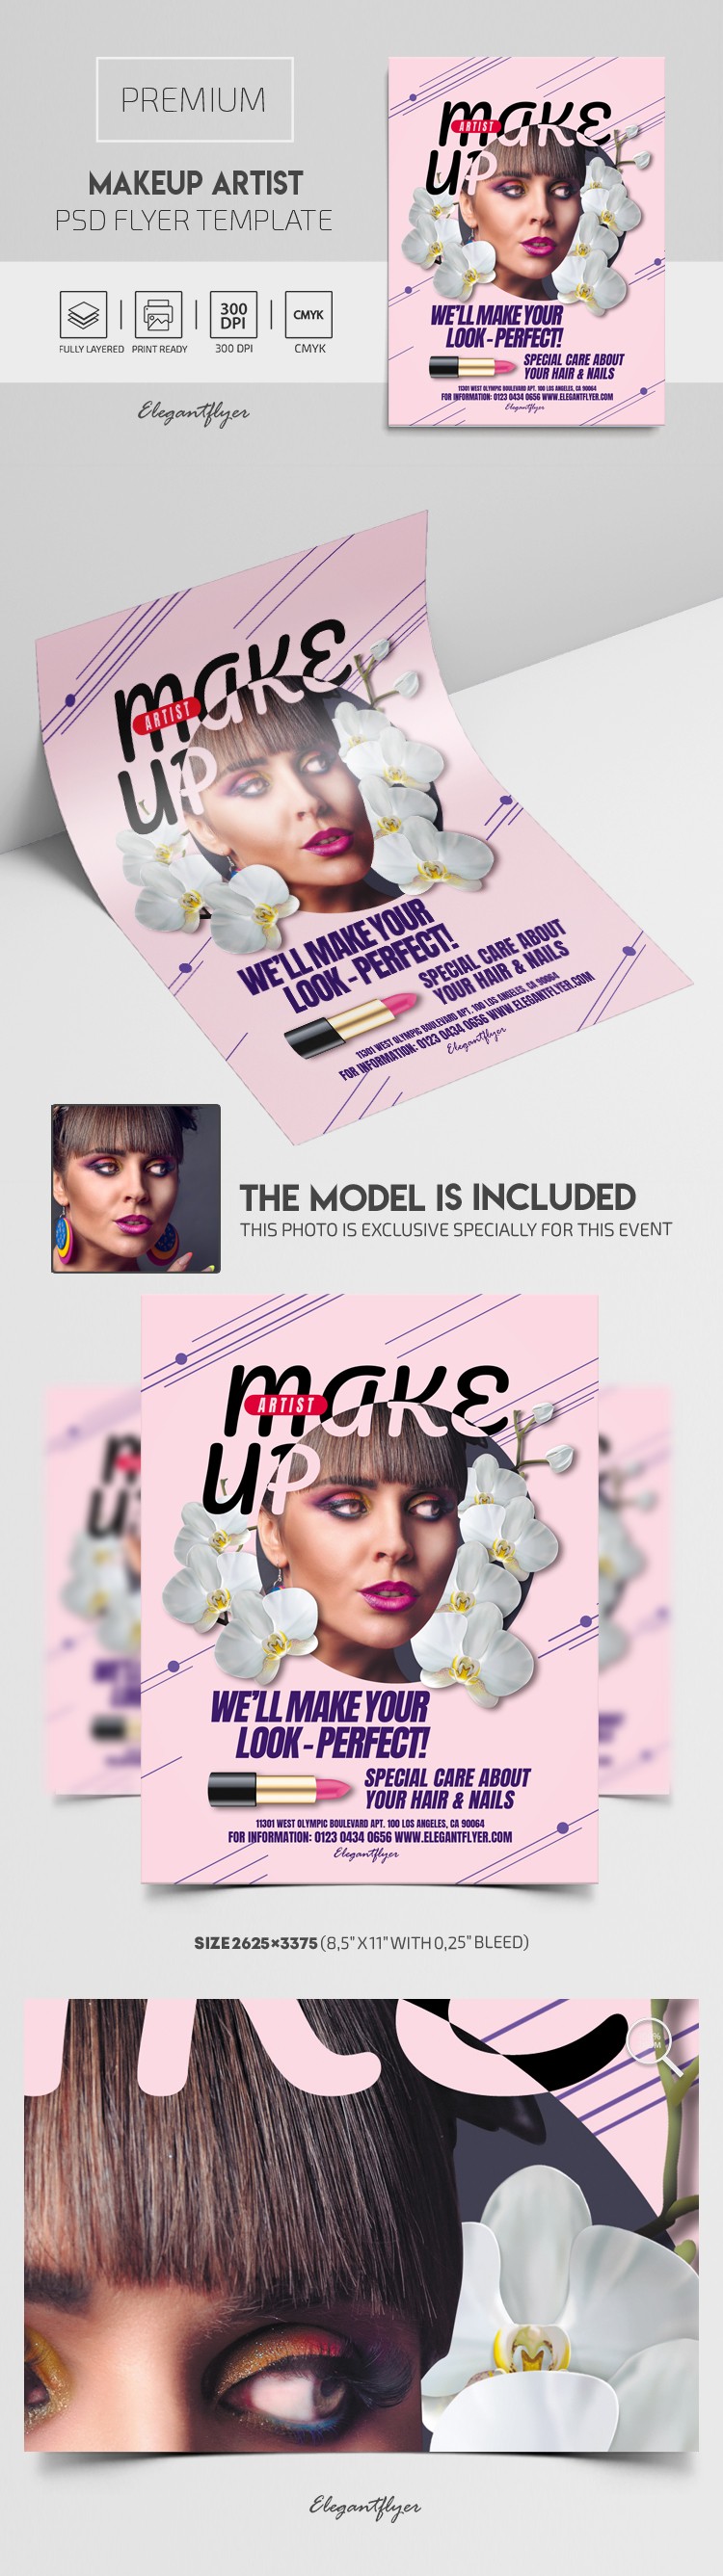 Makeup Artist Flyer by ElegantFlyer